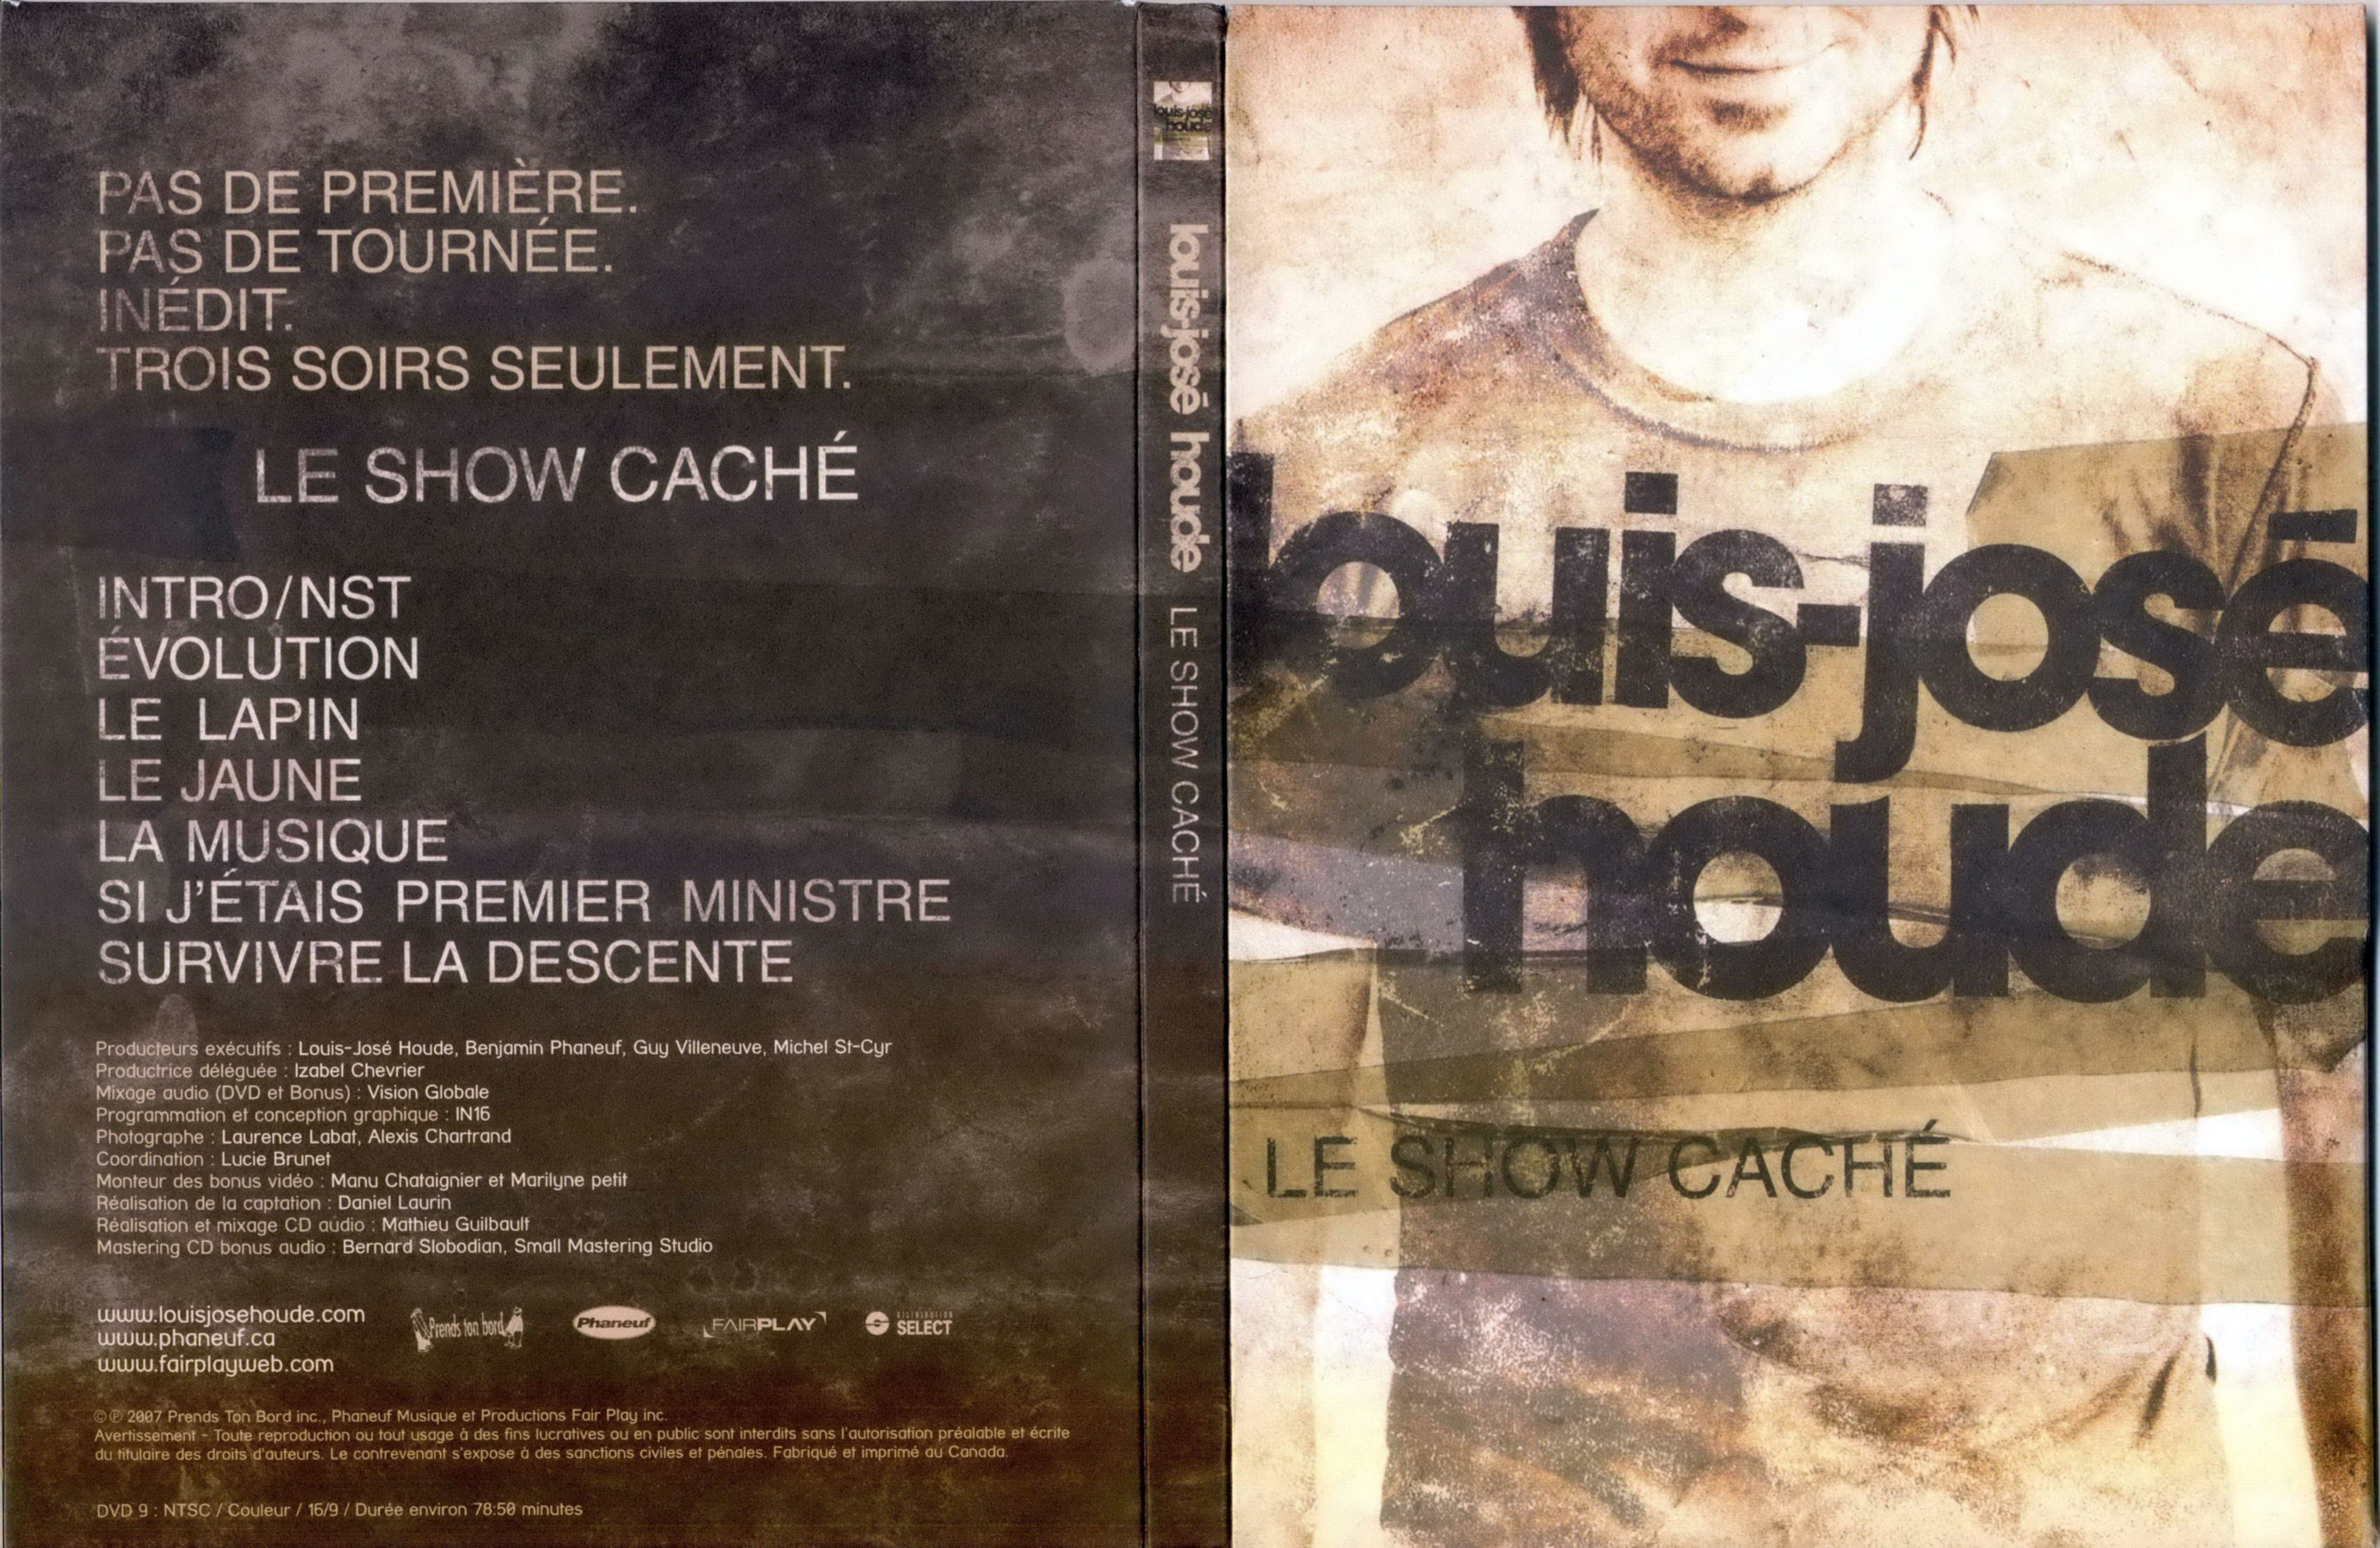 Jaquette DVD Louis-Jose Houde - Le show cach